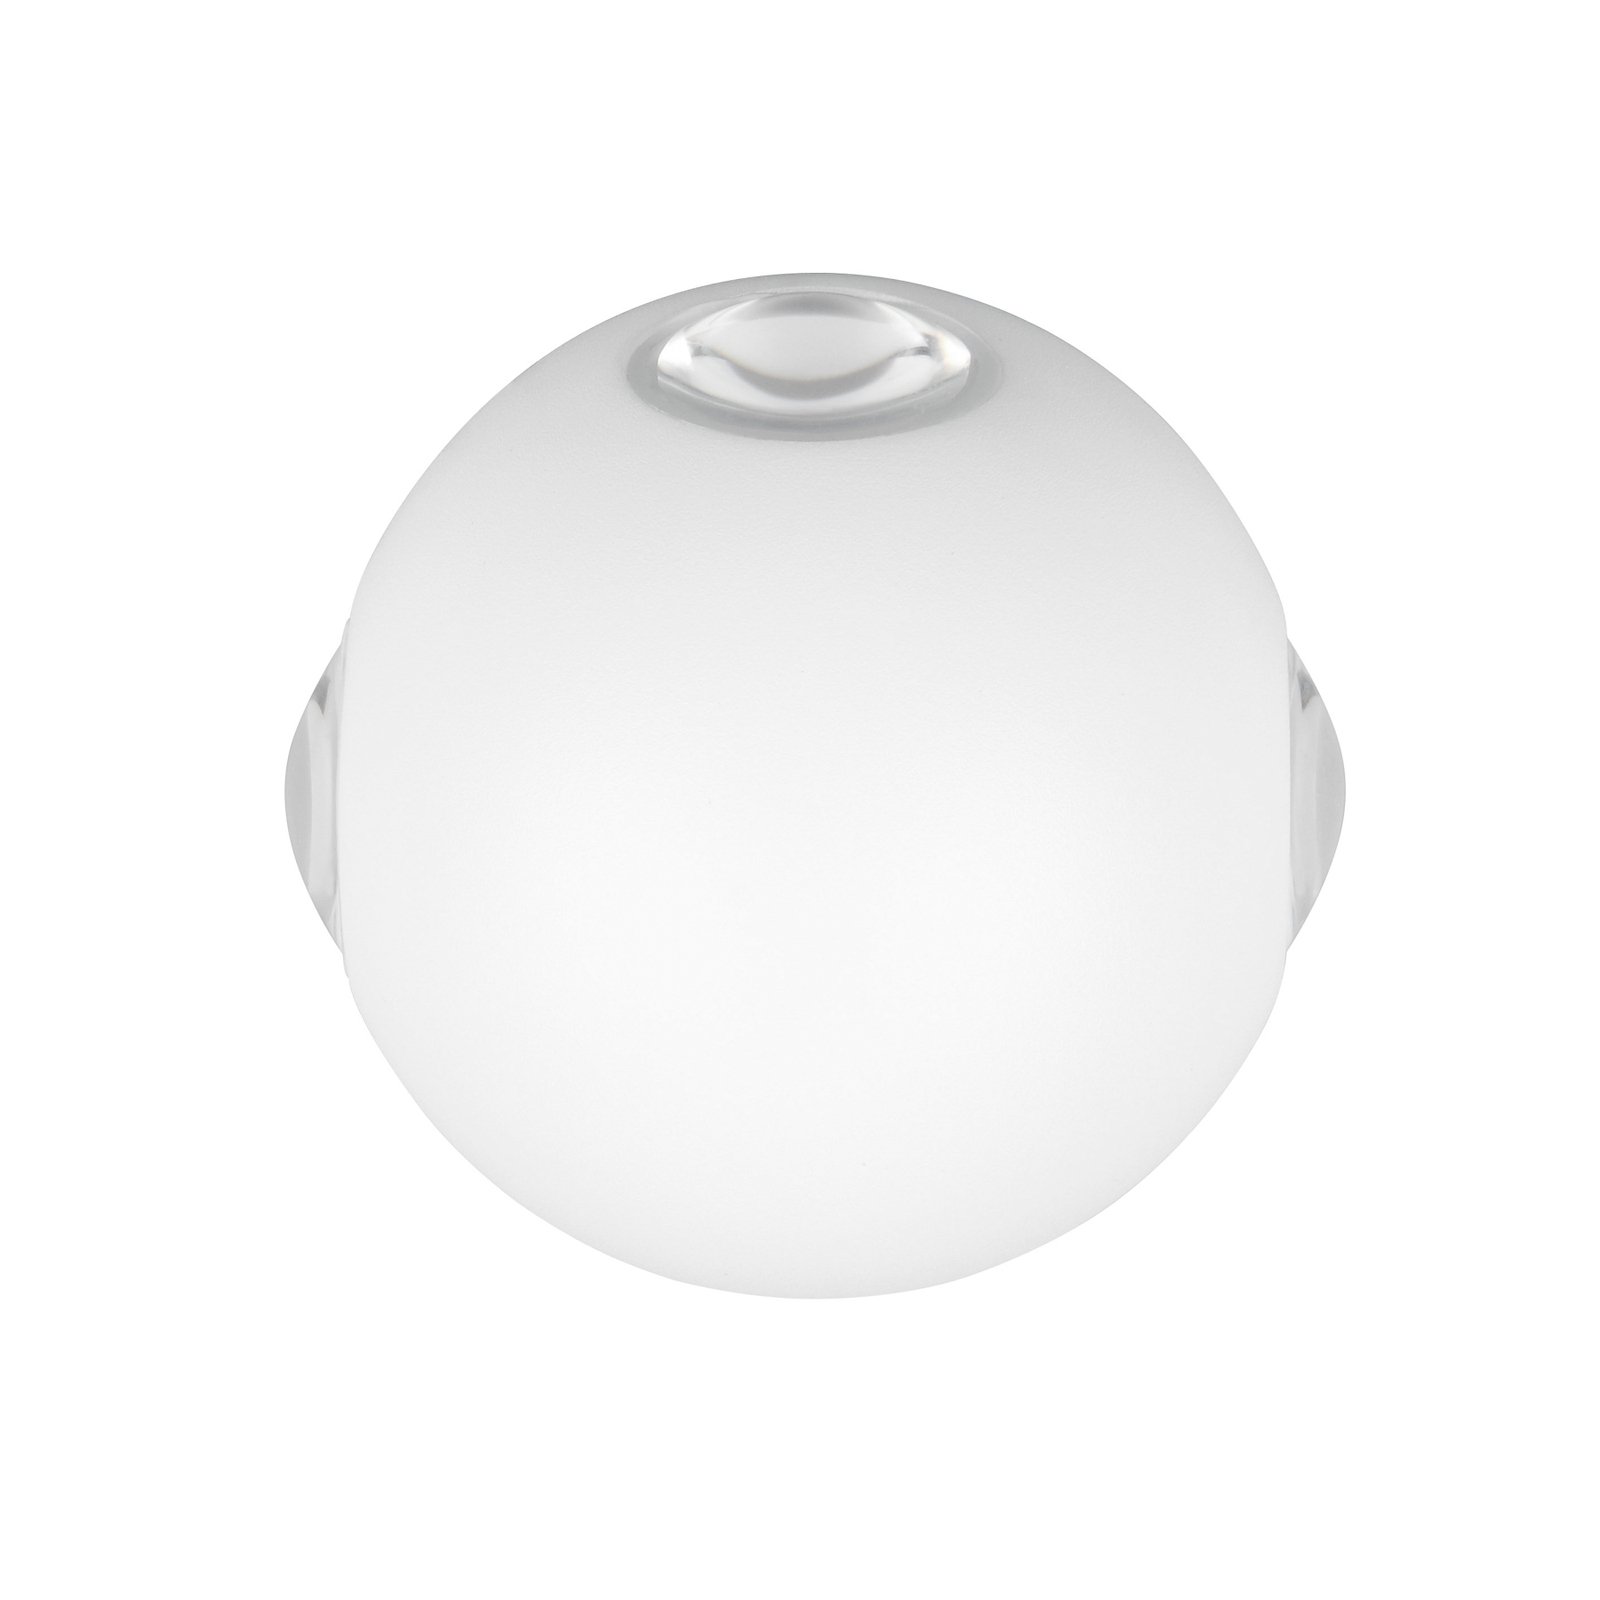 Zunanja stenska svetilka LED Avisio, bela mat, 4-svetlobna, polkrožna